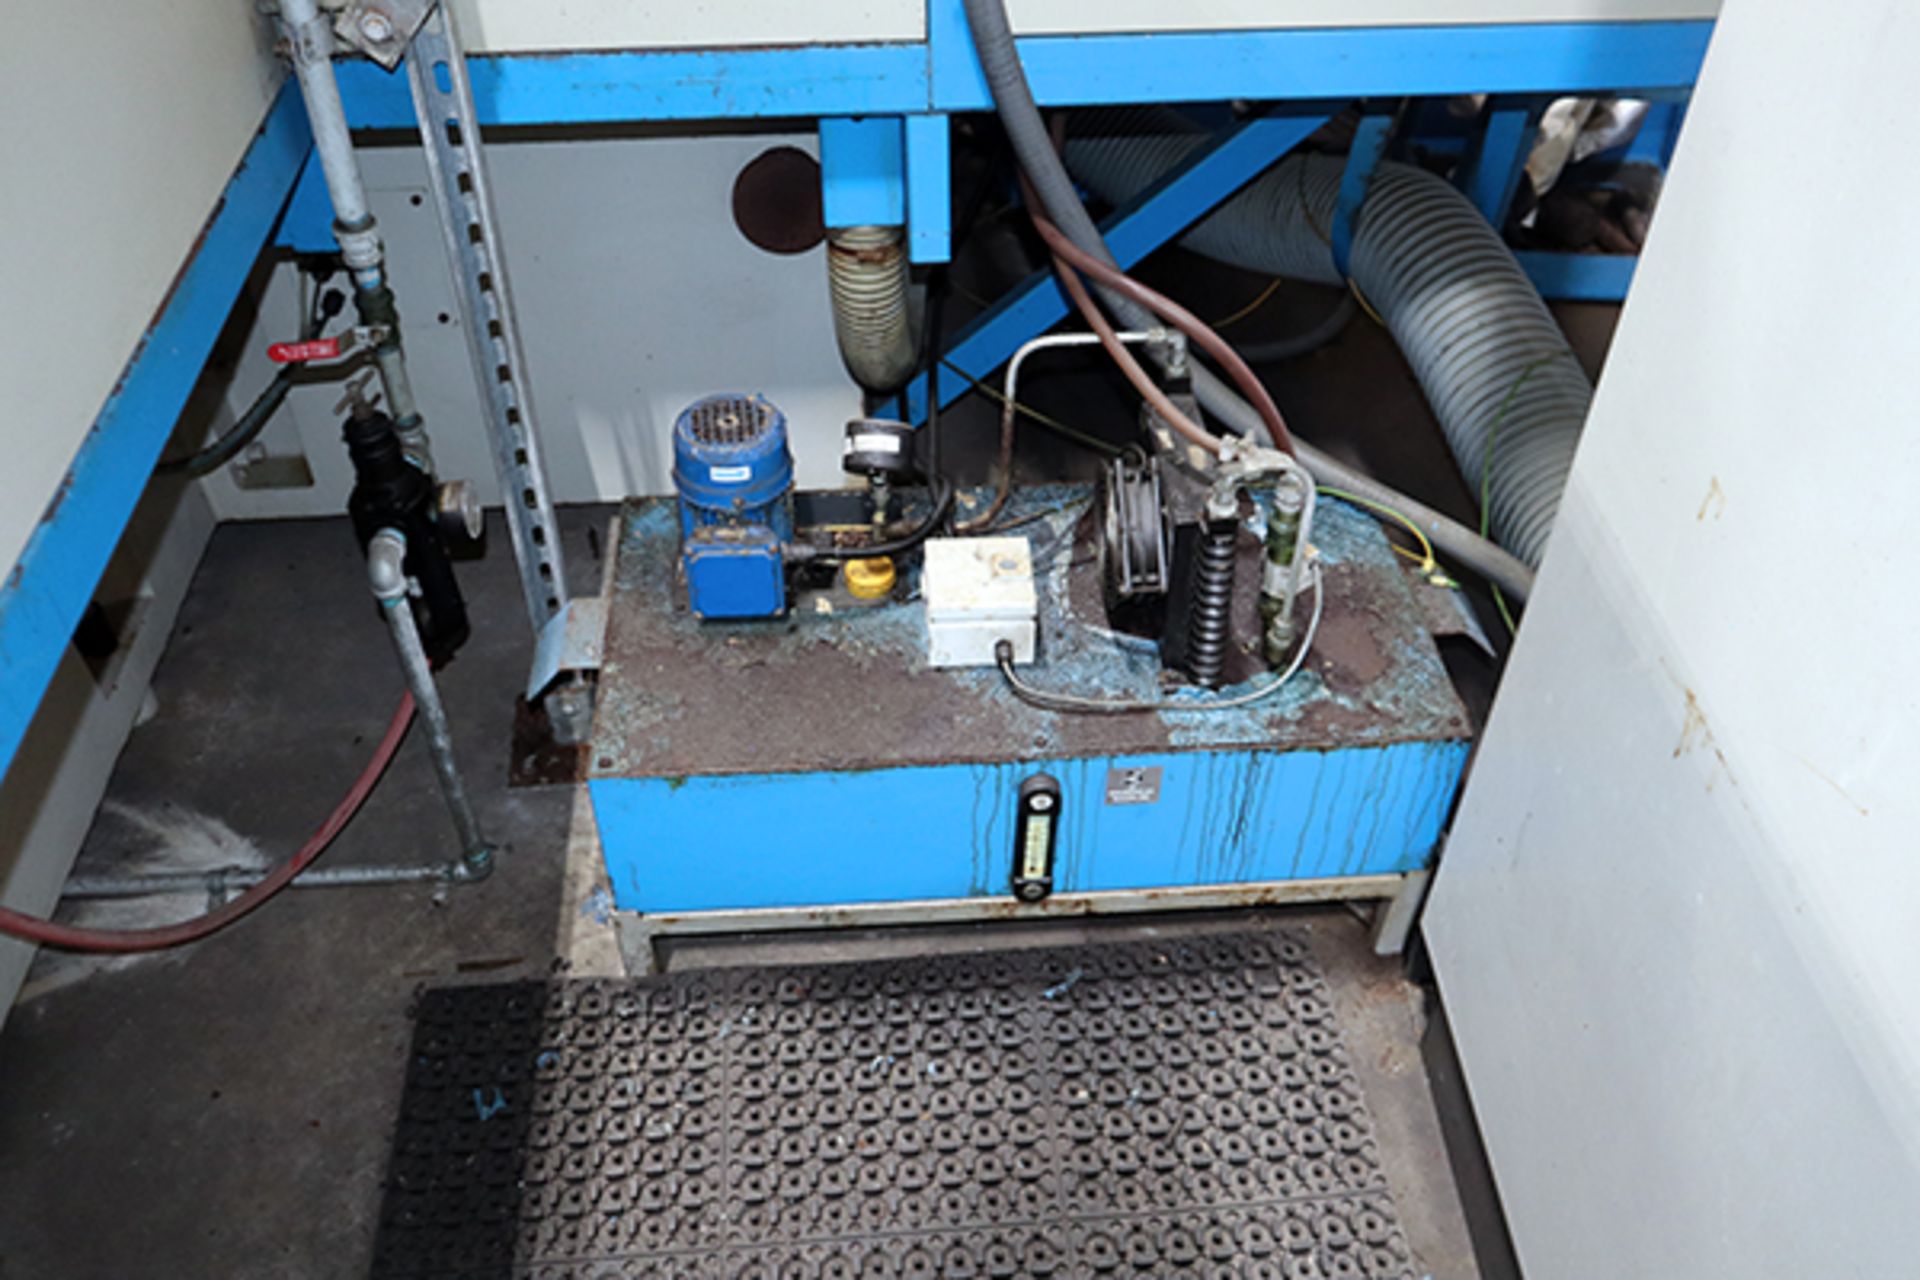 Hol Monta UB 50 Cylindrical Grinding Machine (2014) - Image 9 of 10